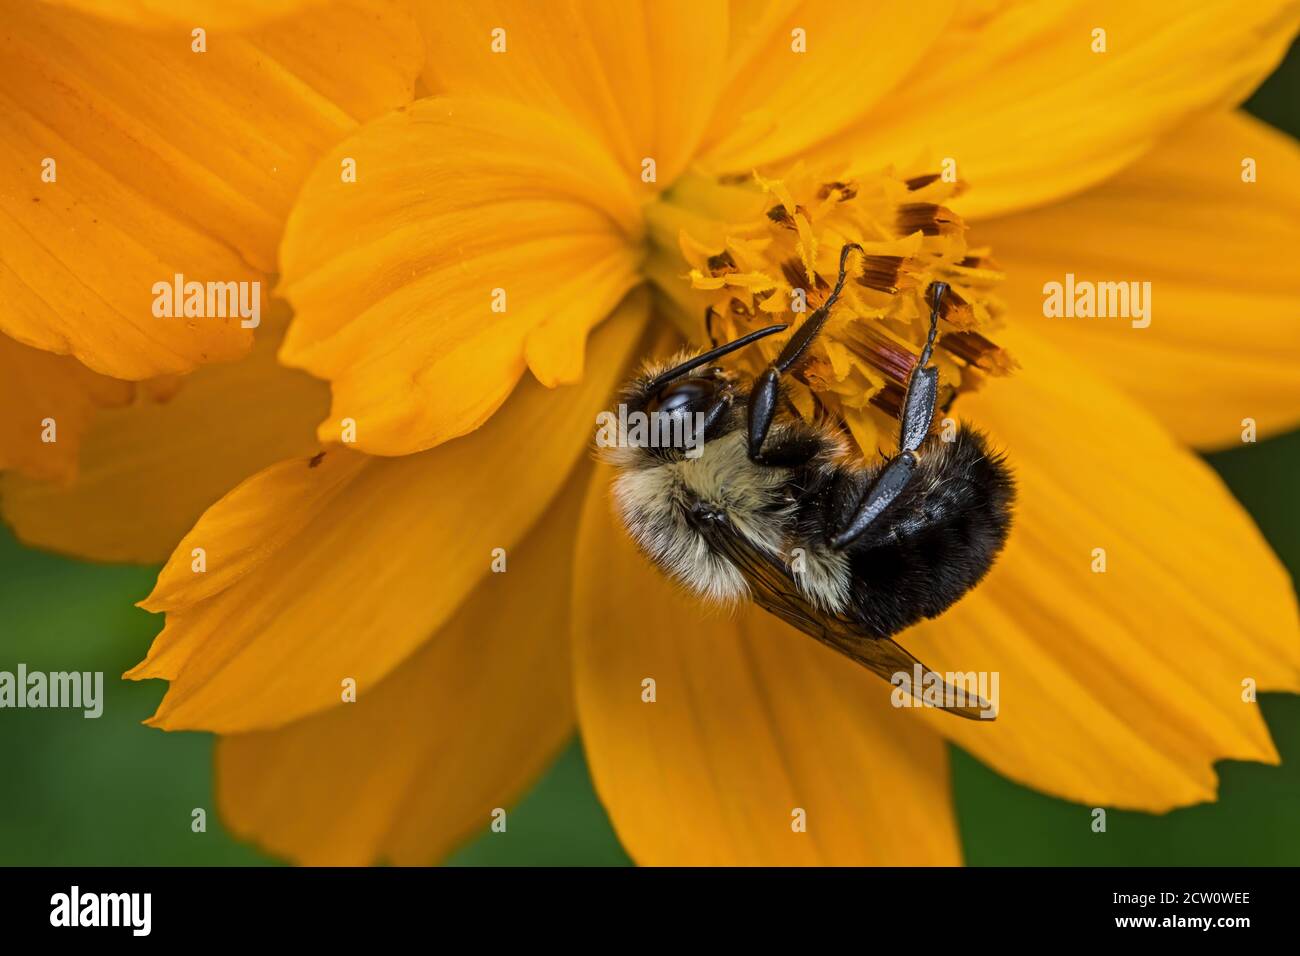 Hummel, die ein Mitglied der Gattung Bombus ist, Teil der Apidae auf orange Kosmos Blume. Kosmos sind krautige mehrjährige Pflanzen oder einjährige Pflanzen. Stockfoto